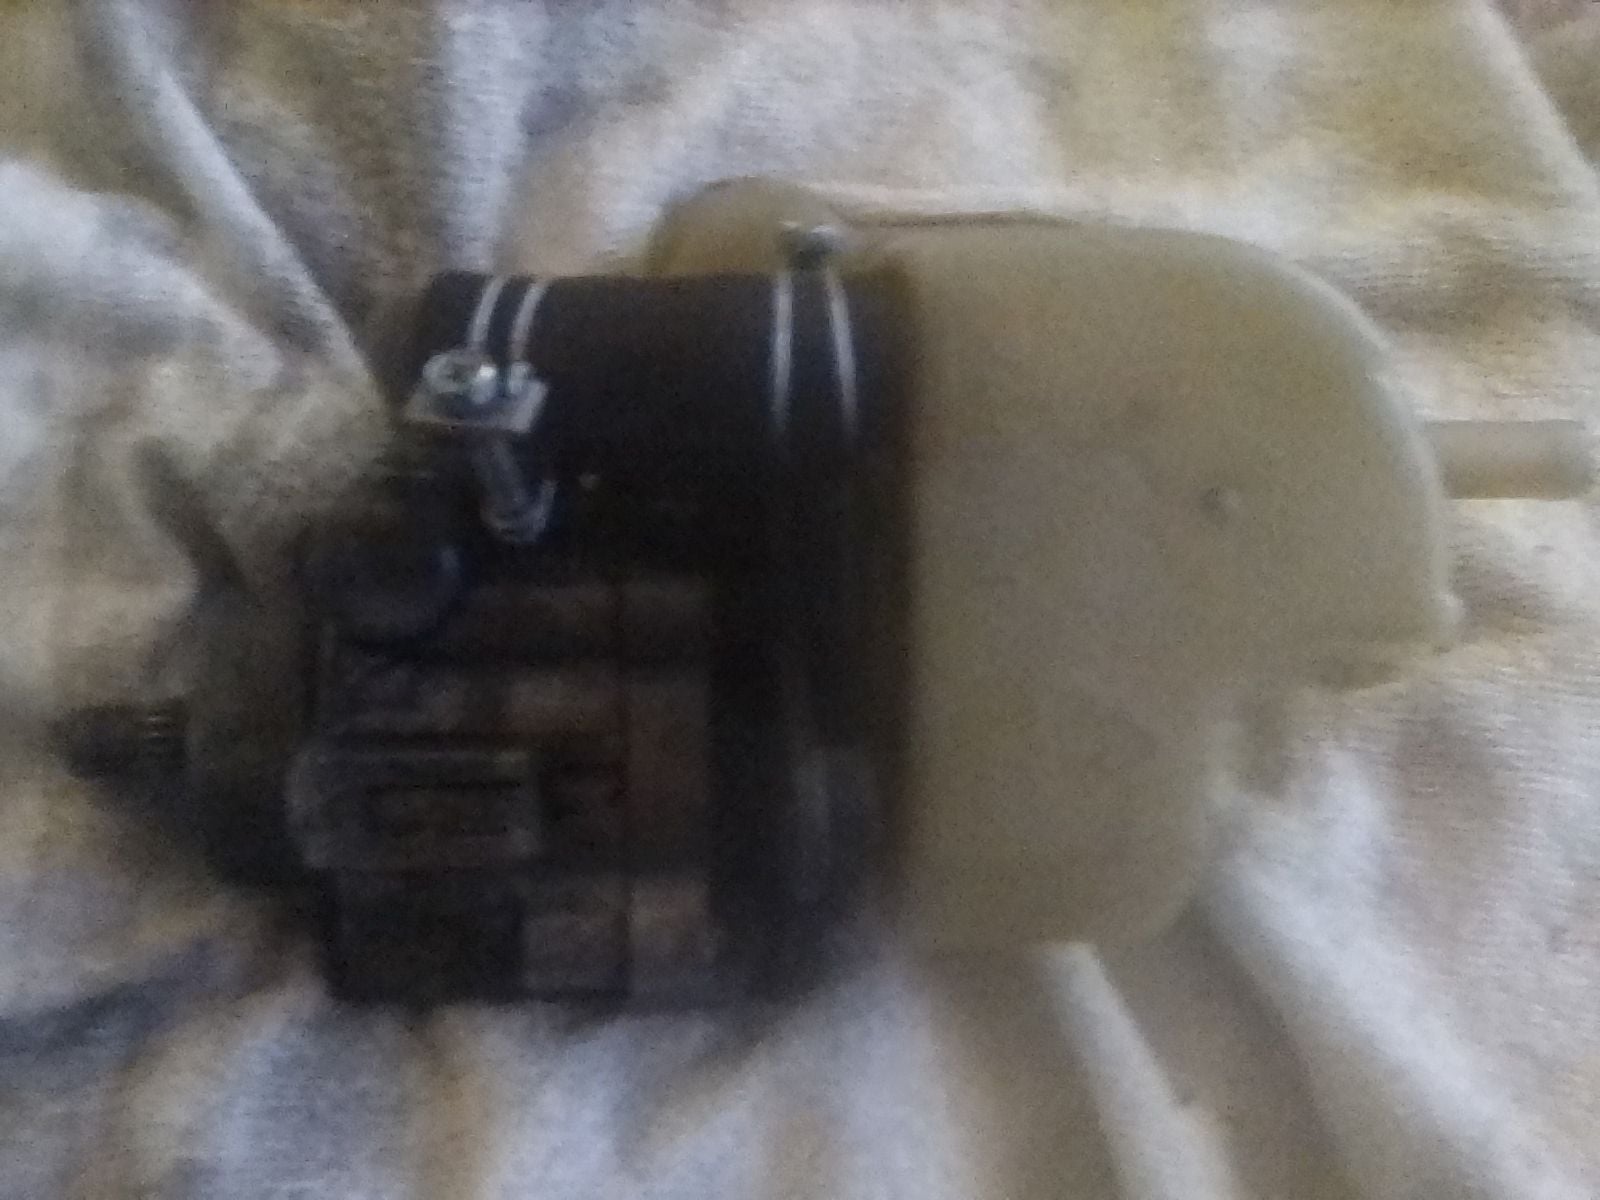 Steering/Suspension - FD - OEM Power Steering Wheel Pump & Reservoir - Used - 1993 to 1995 Mazda RX-7 - San Jose, CA 95121, United States